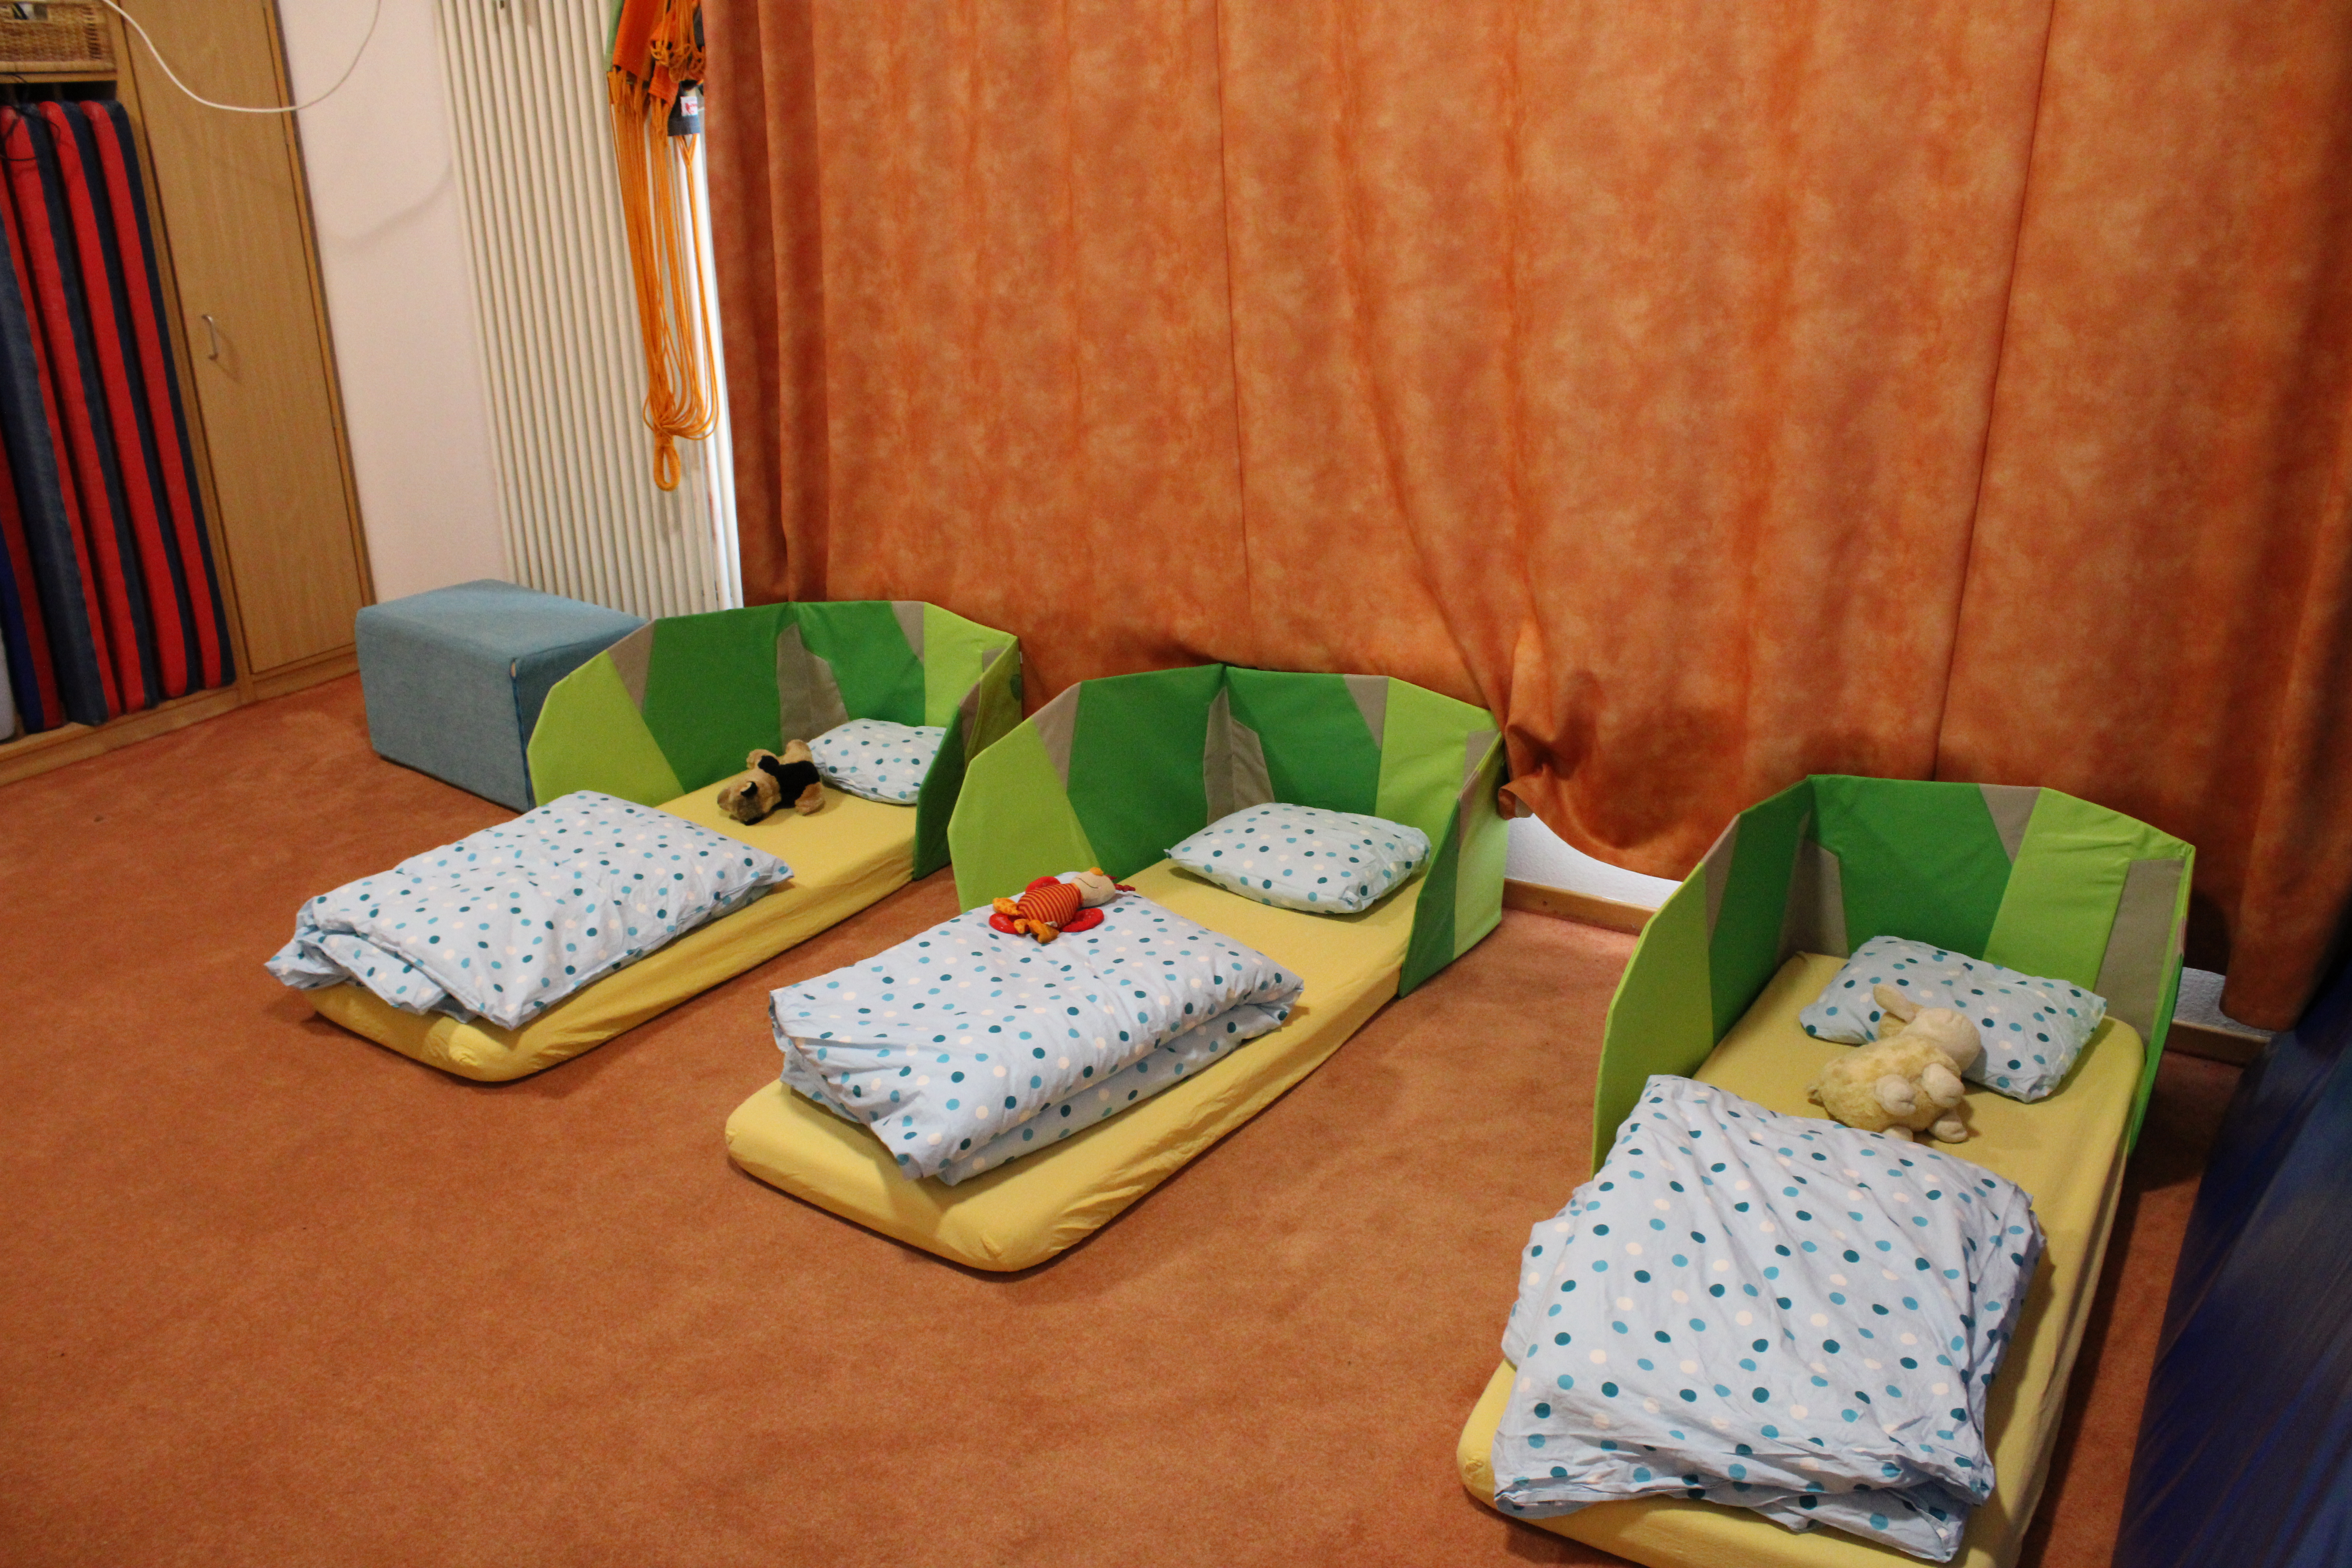 Hier ist ein Teil des Schlafraums zu sehen. Es liegen drei Matratzen mit gelben Spannbetttuch auf dem Boden. Es gibt blau gepunktete Bettwäsche.